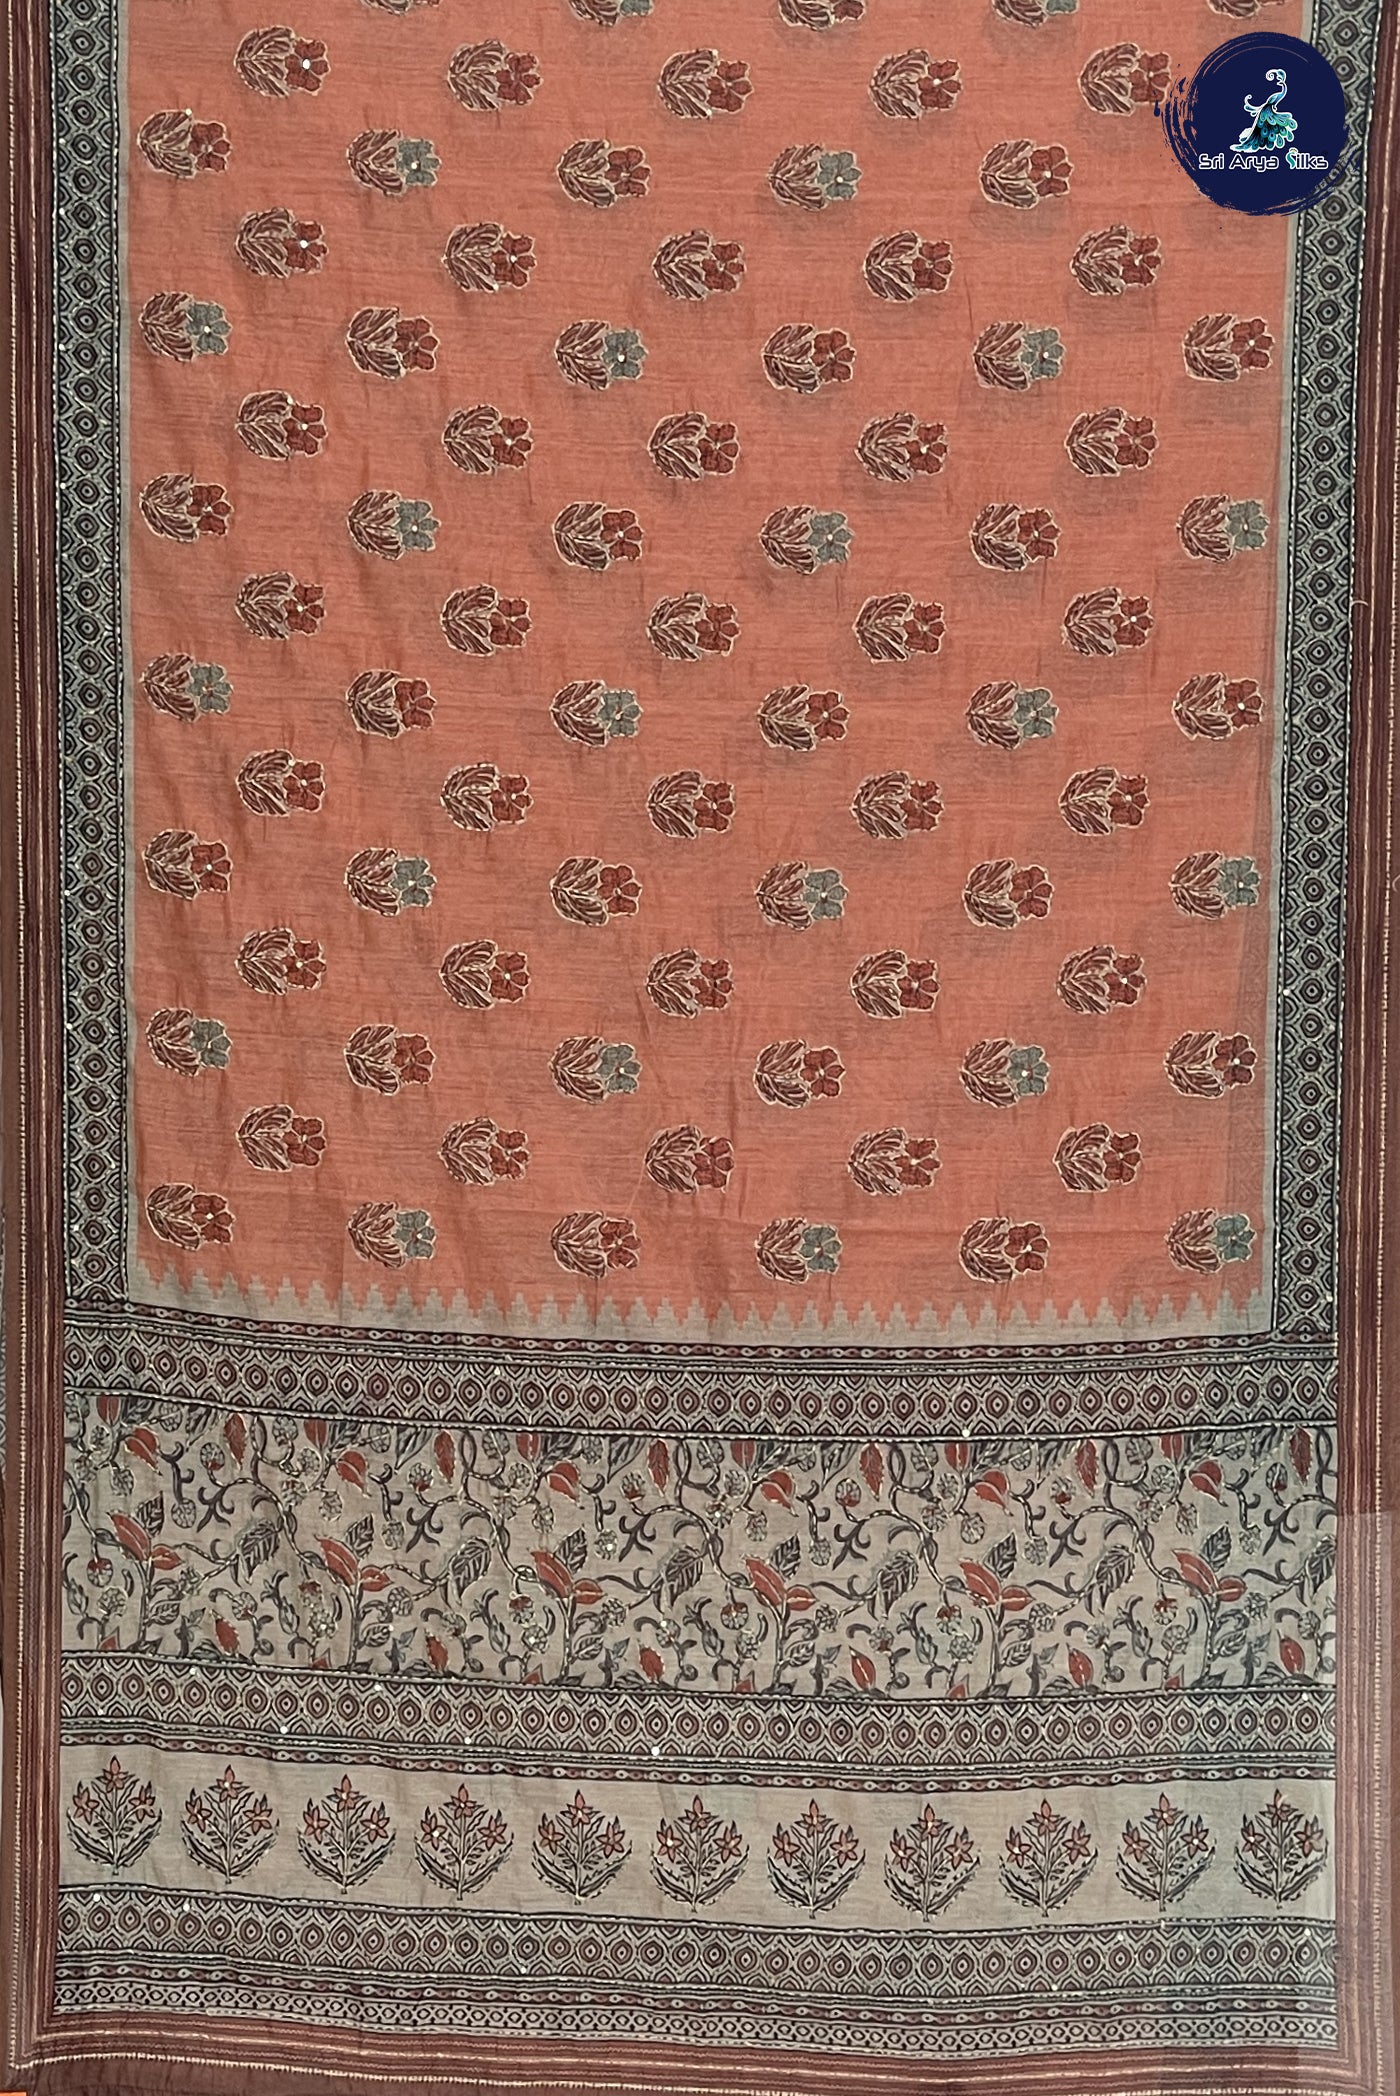 Peach Tussar Saree With Kantha Work Pattern